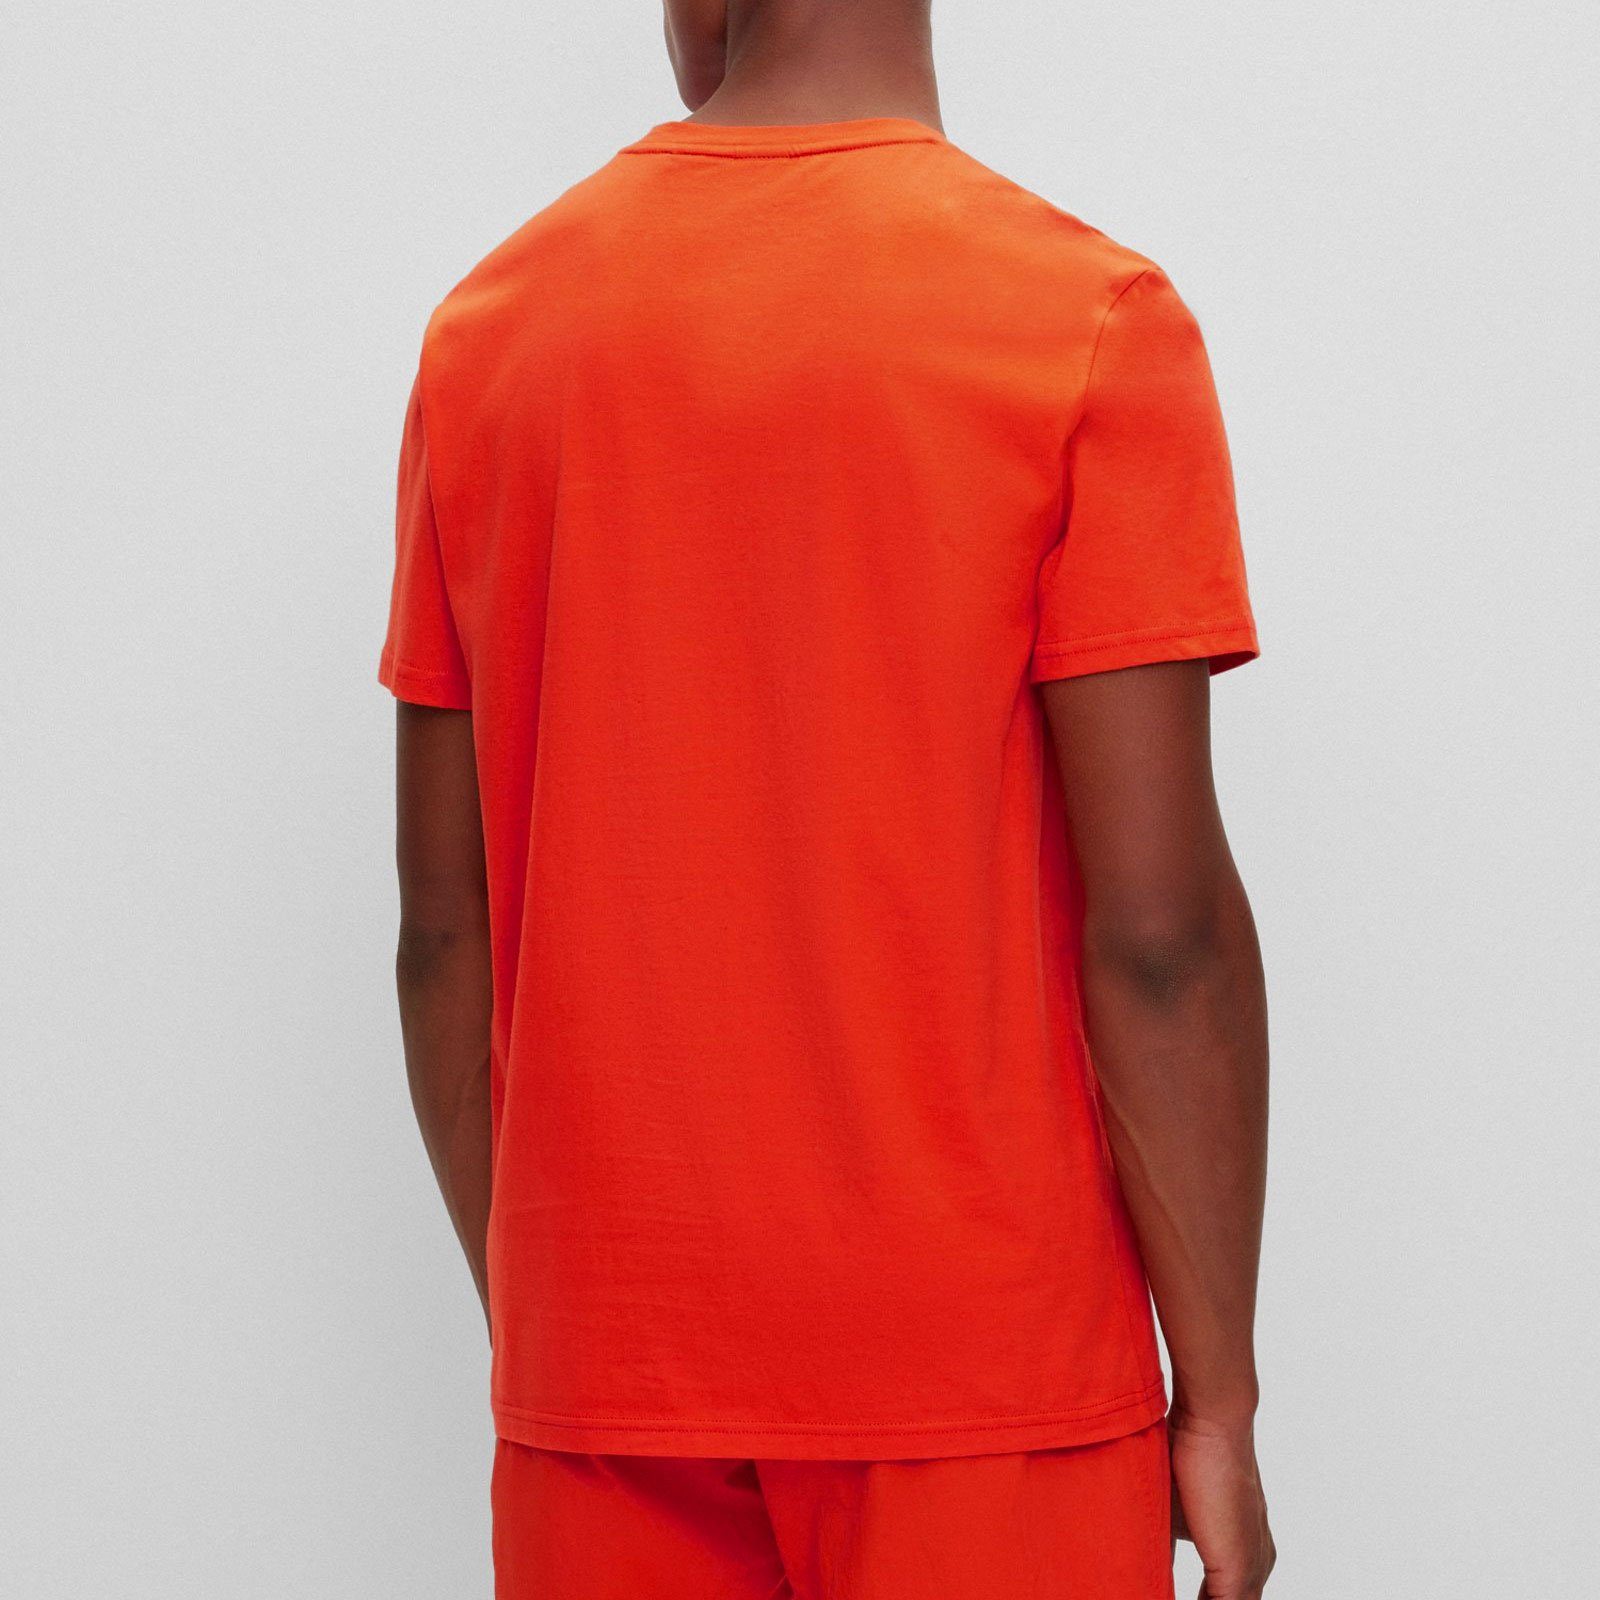 RN der T-Shirt Brust T-Shirt 821 großem mit bright orange BOSS Markenprint auf